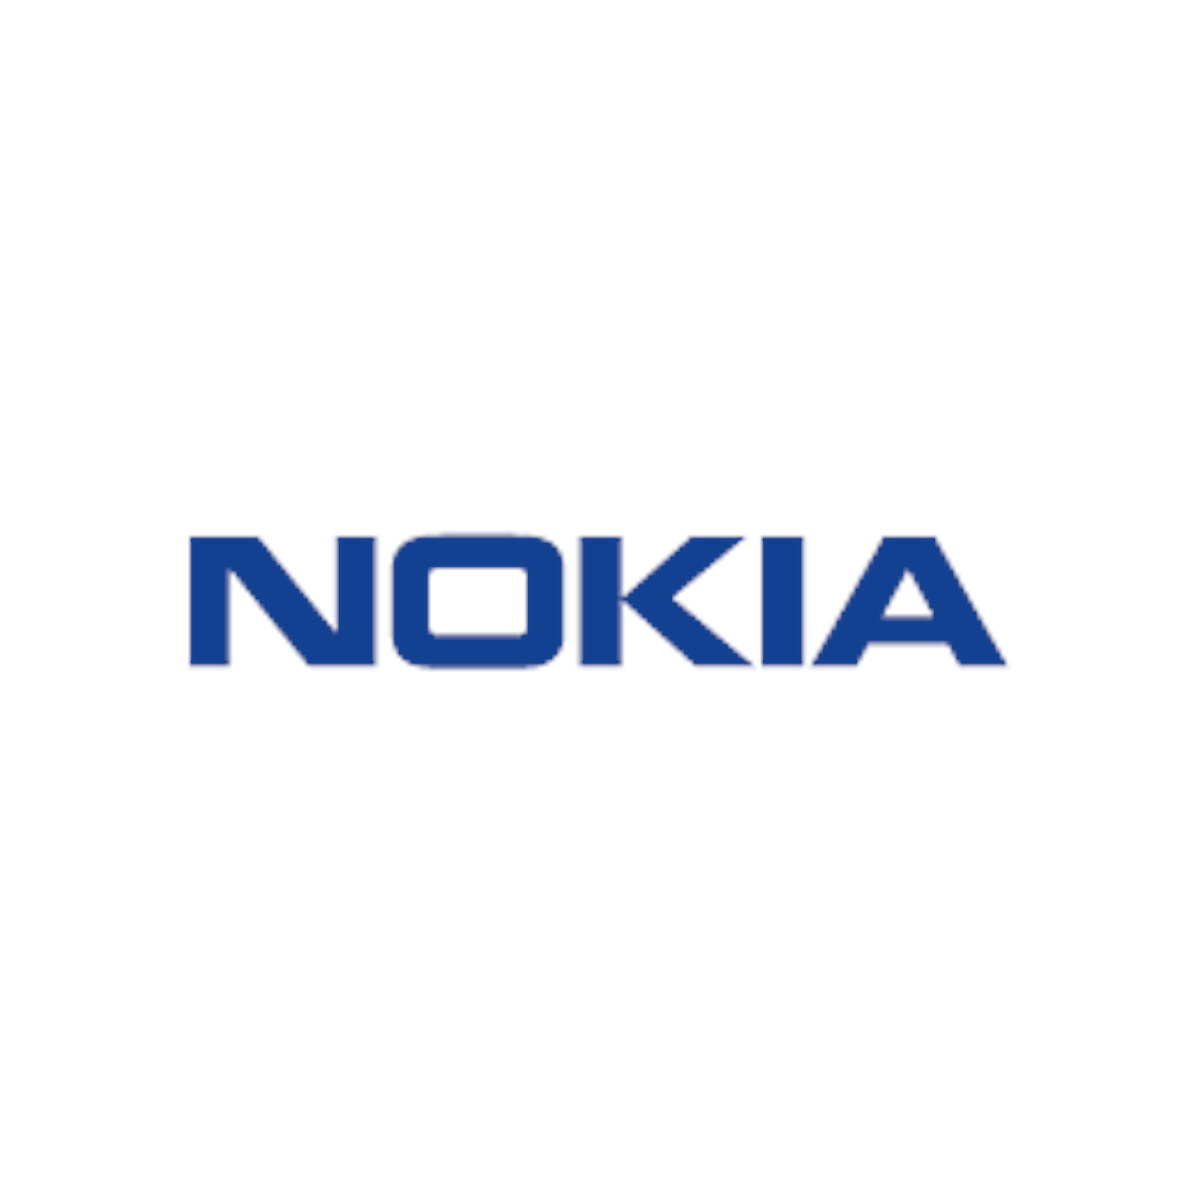 Nokia Logo Blue